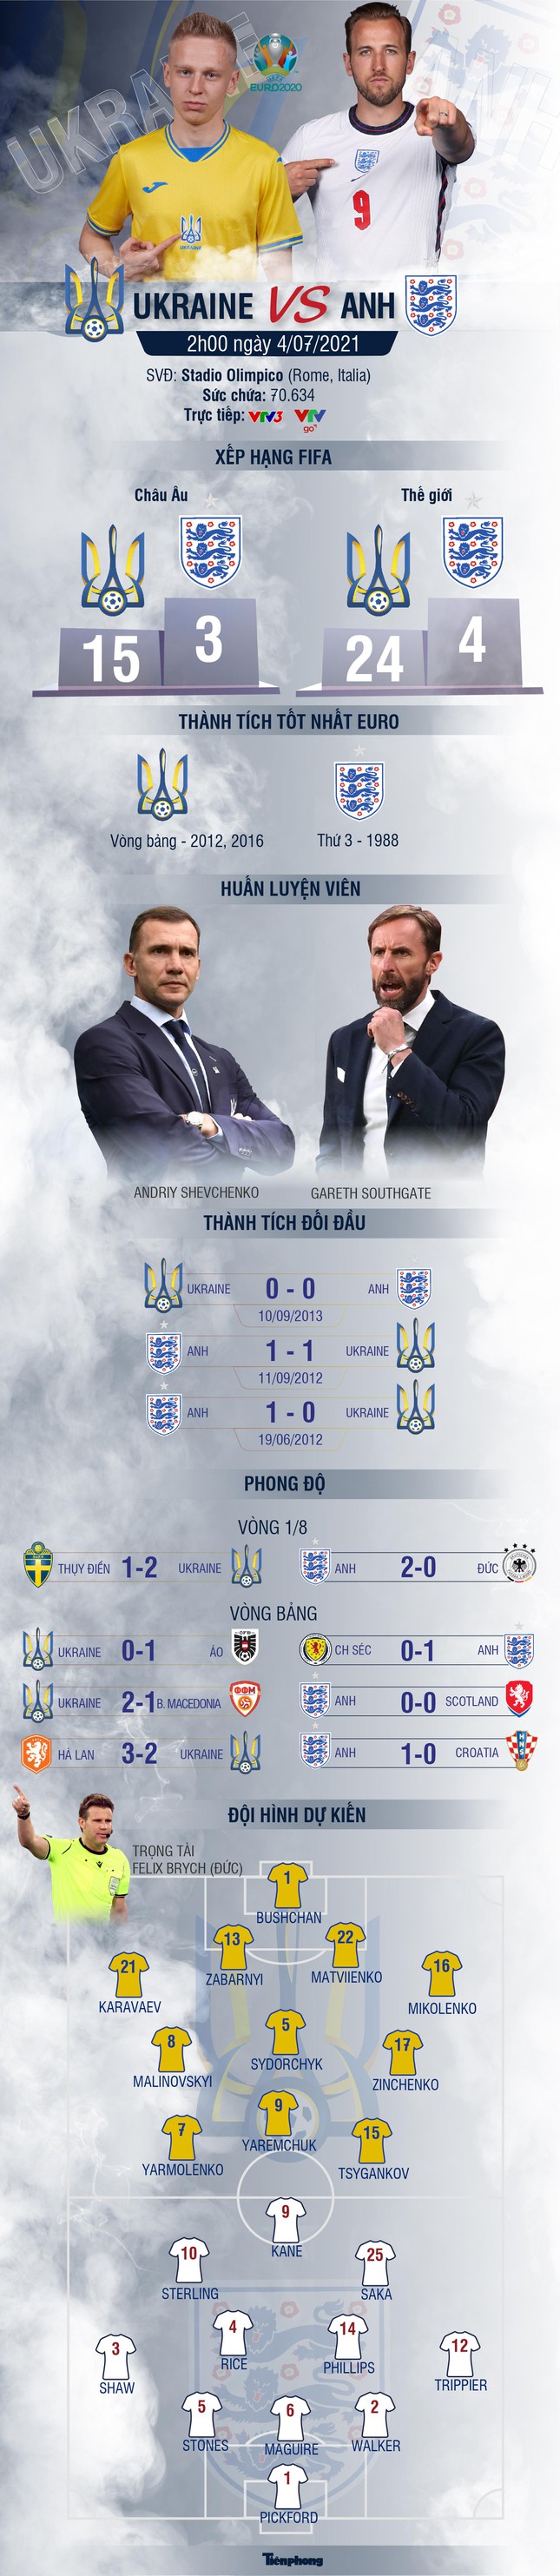 Tứ kết EURO 2020 Ukraine - Anh: Tam sư thẳng tiến - Ảnh 2.